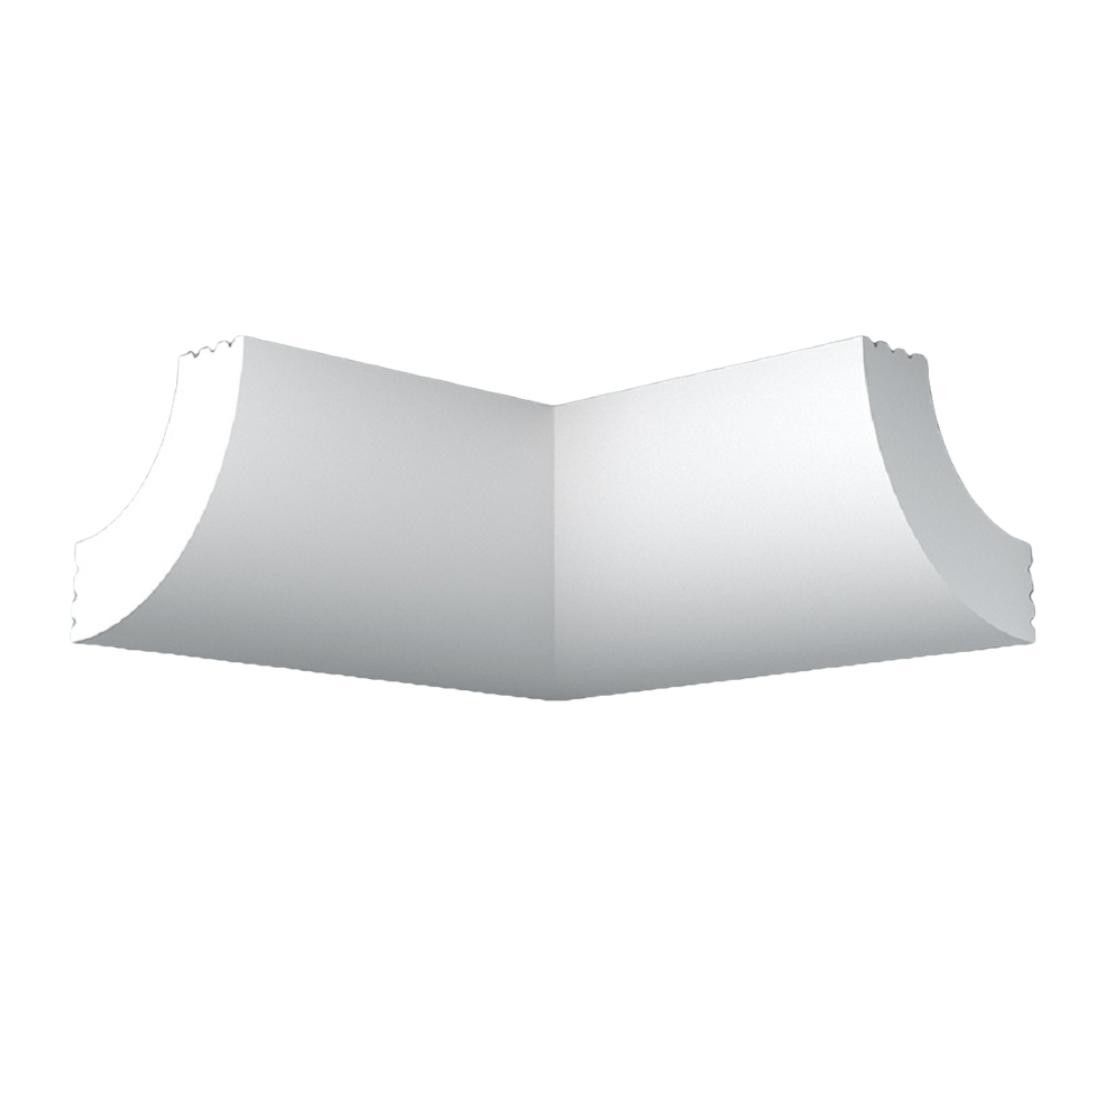 Уголок потолочный экструдированный ПЛИНТЭКС внутренний A20/20, белый, 20х20мм, 4шт